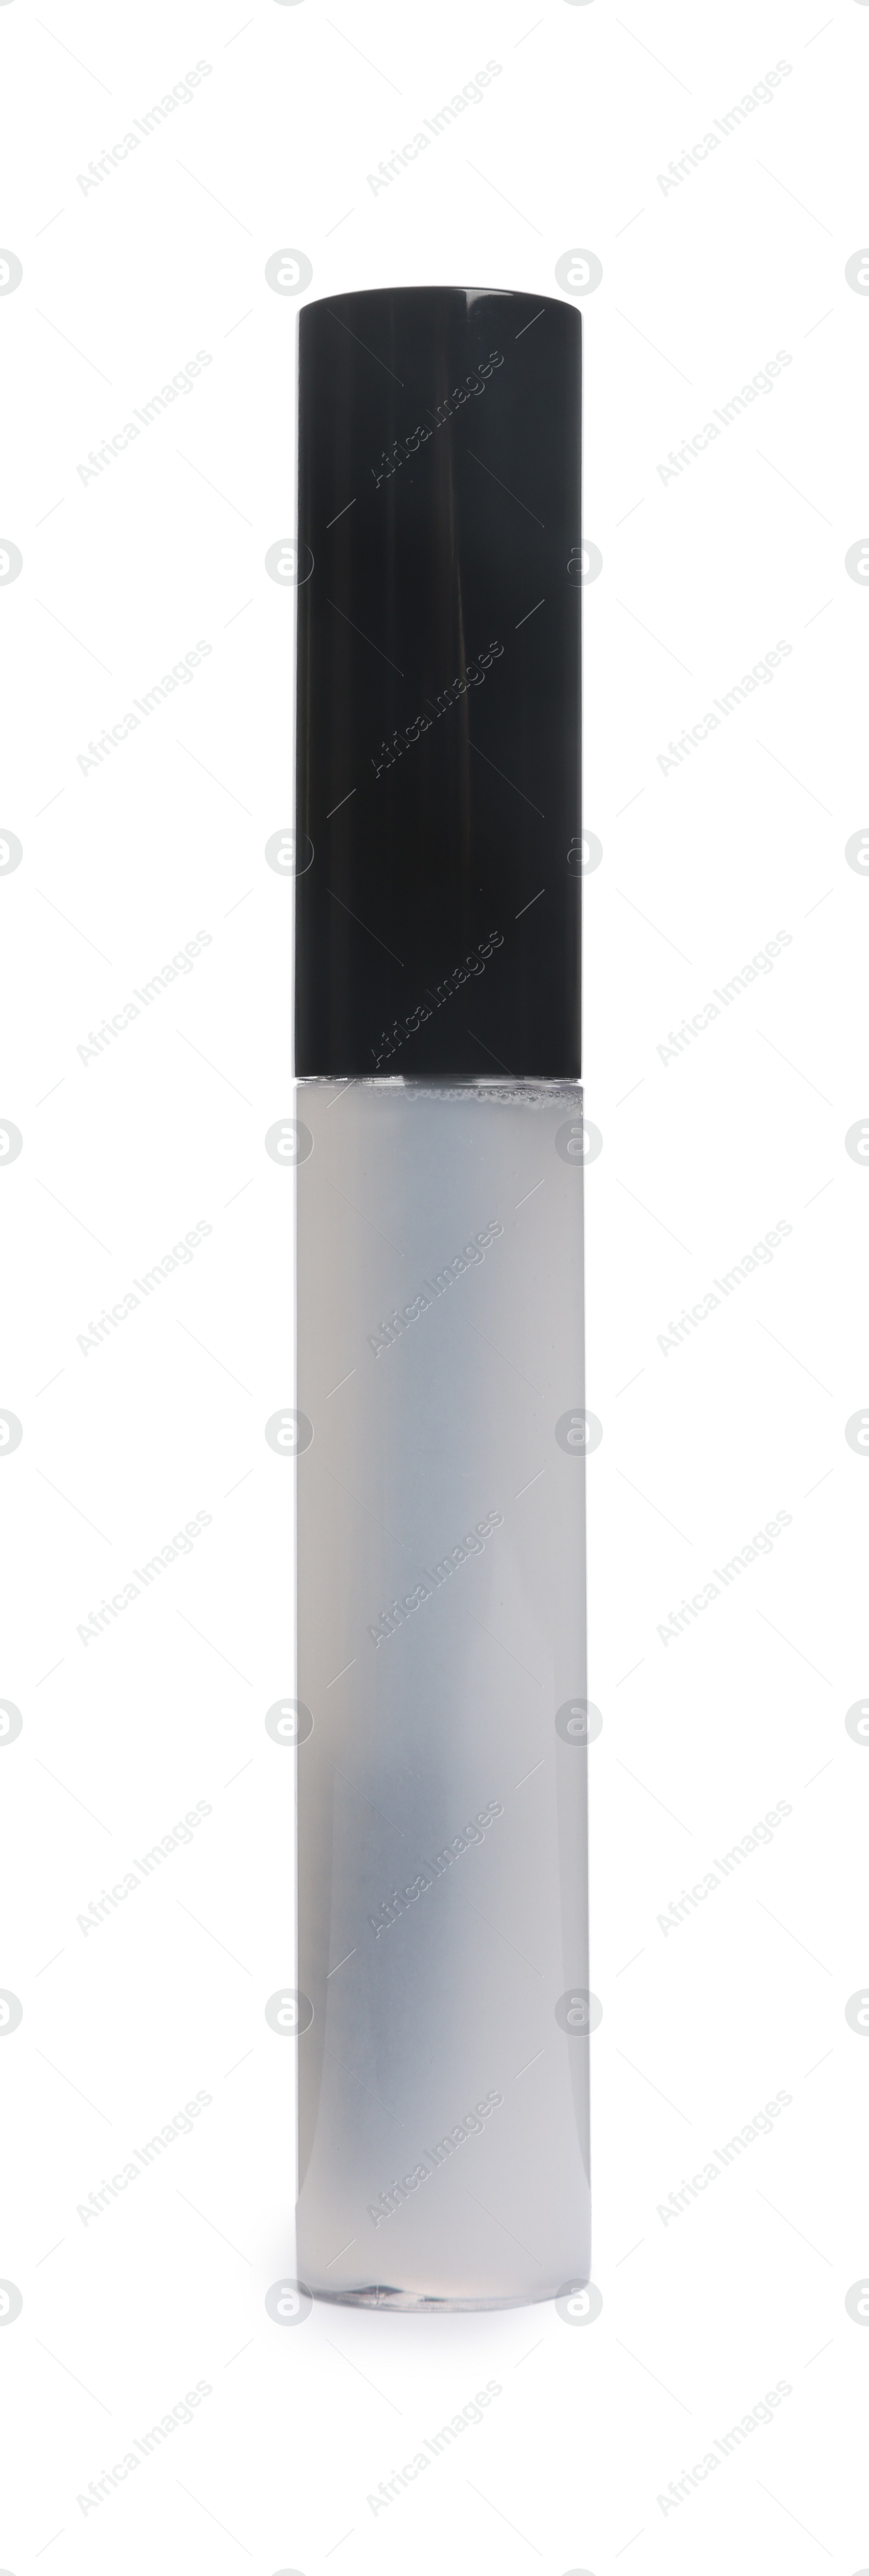 Photo of Tube of eyelash oil isolated on white